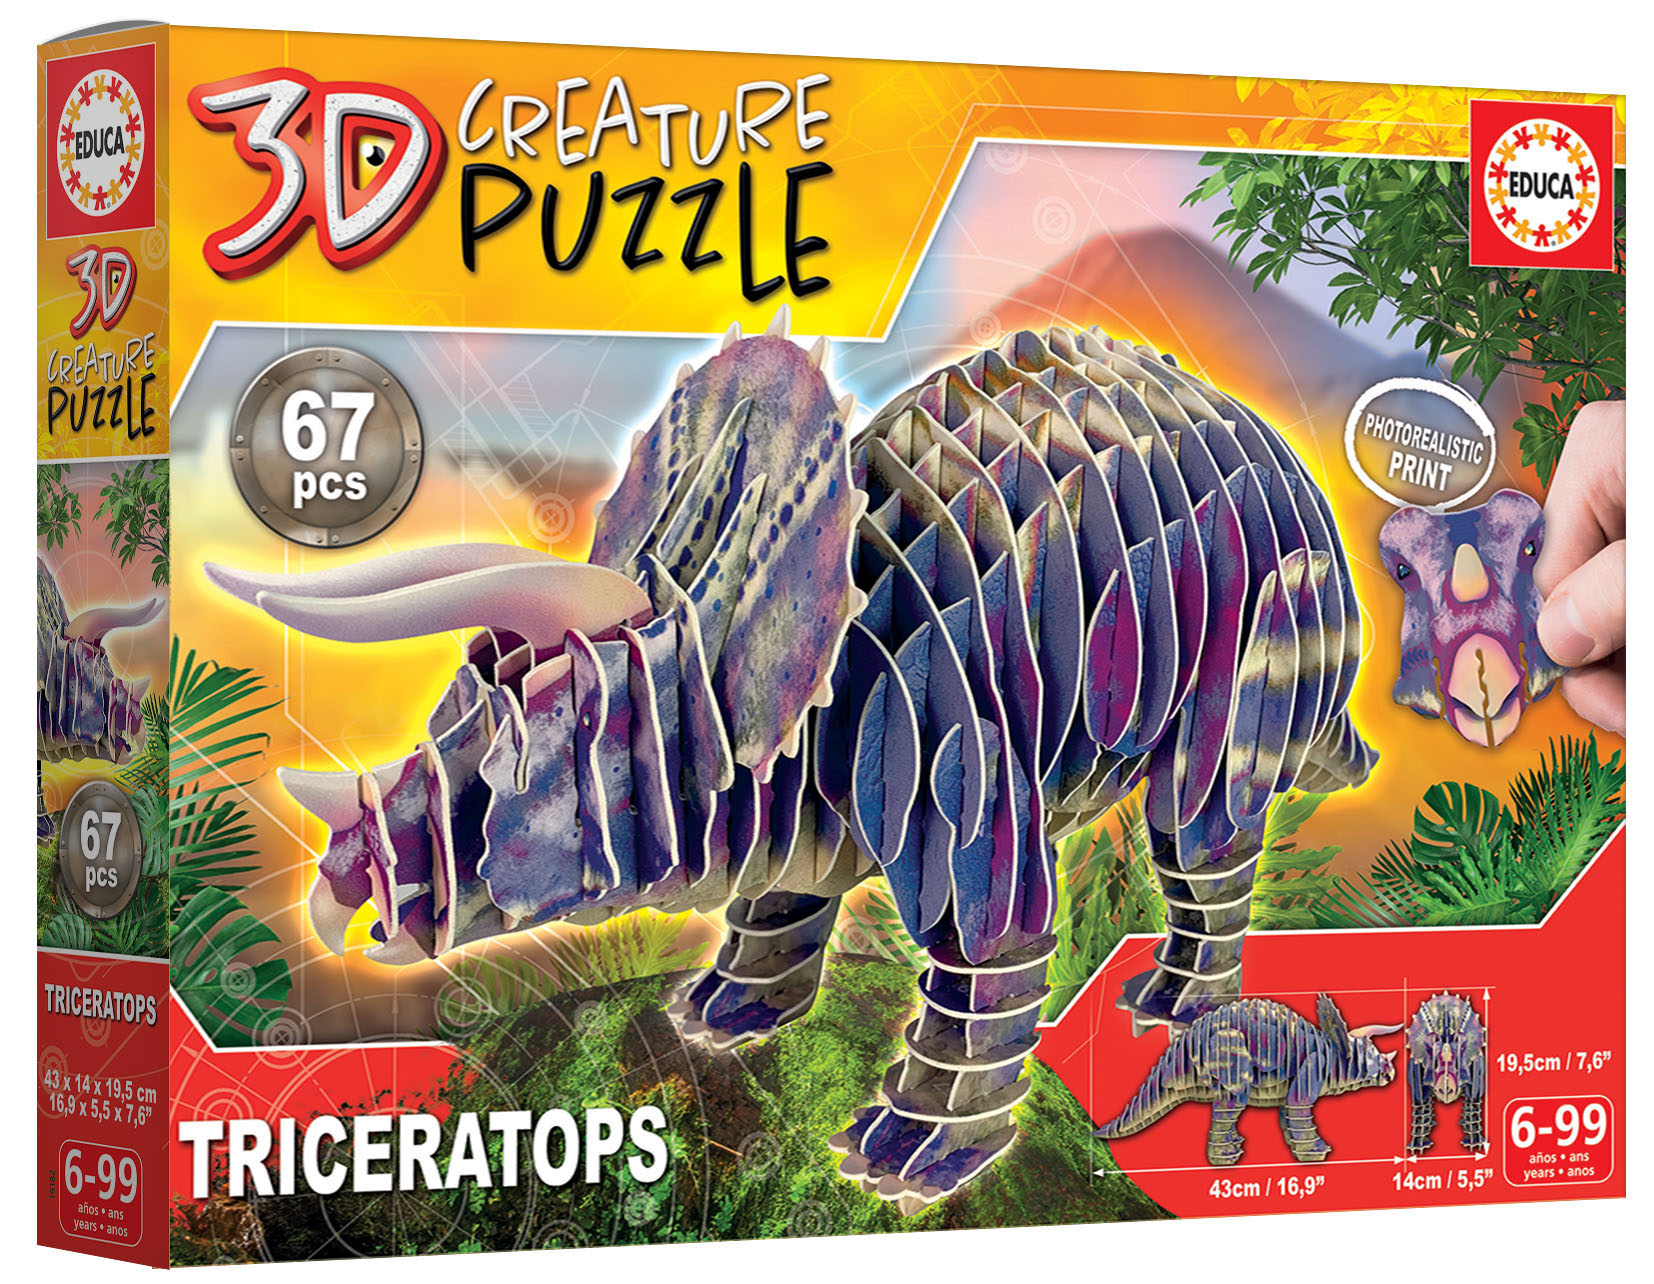 Educa Borrás - T-Rex - 3D Creature Puzzle, 3D PUZZLE